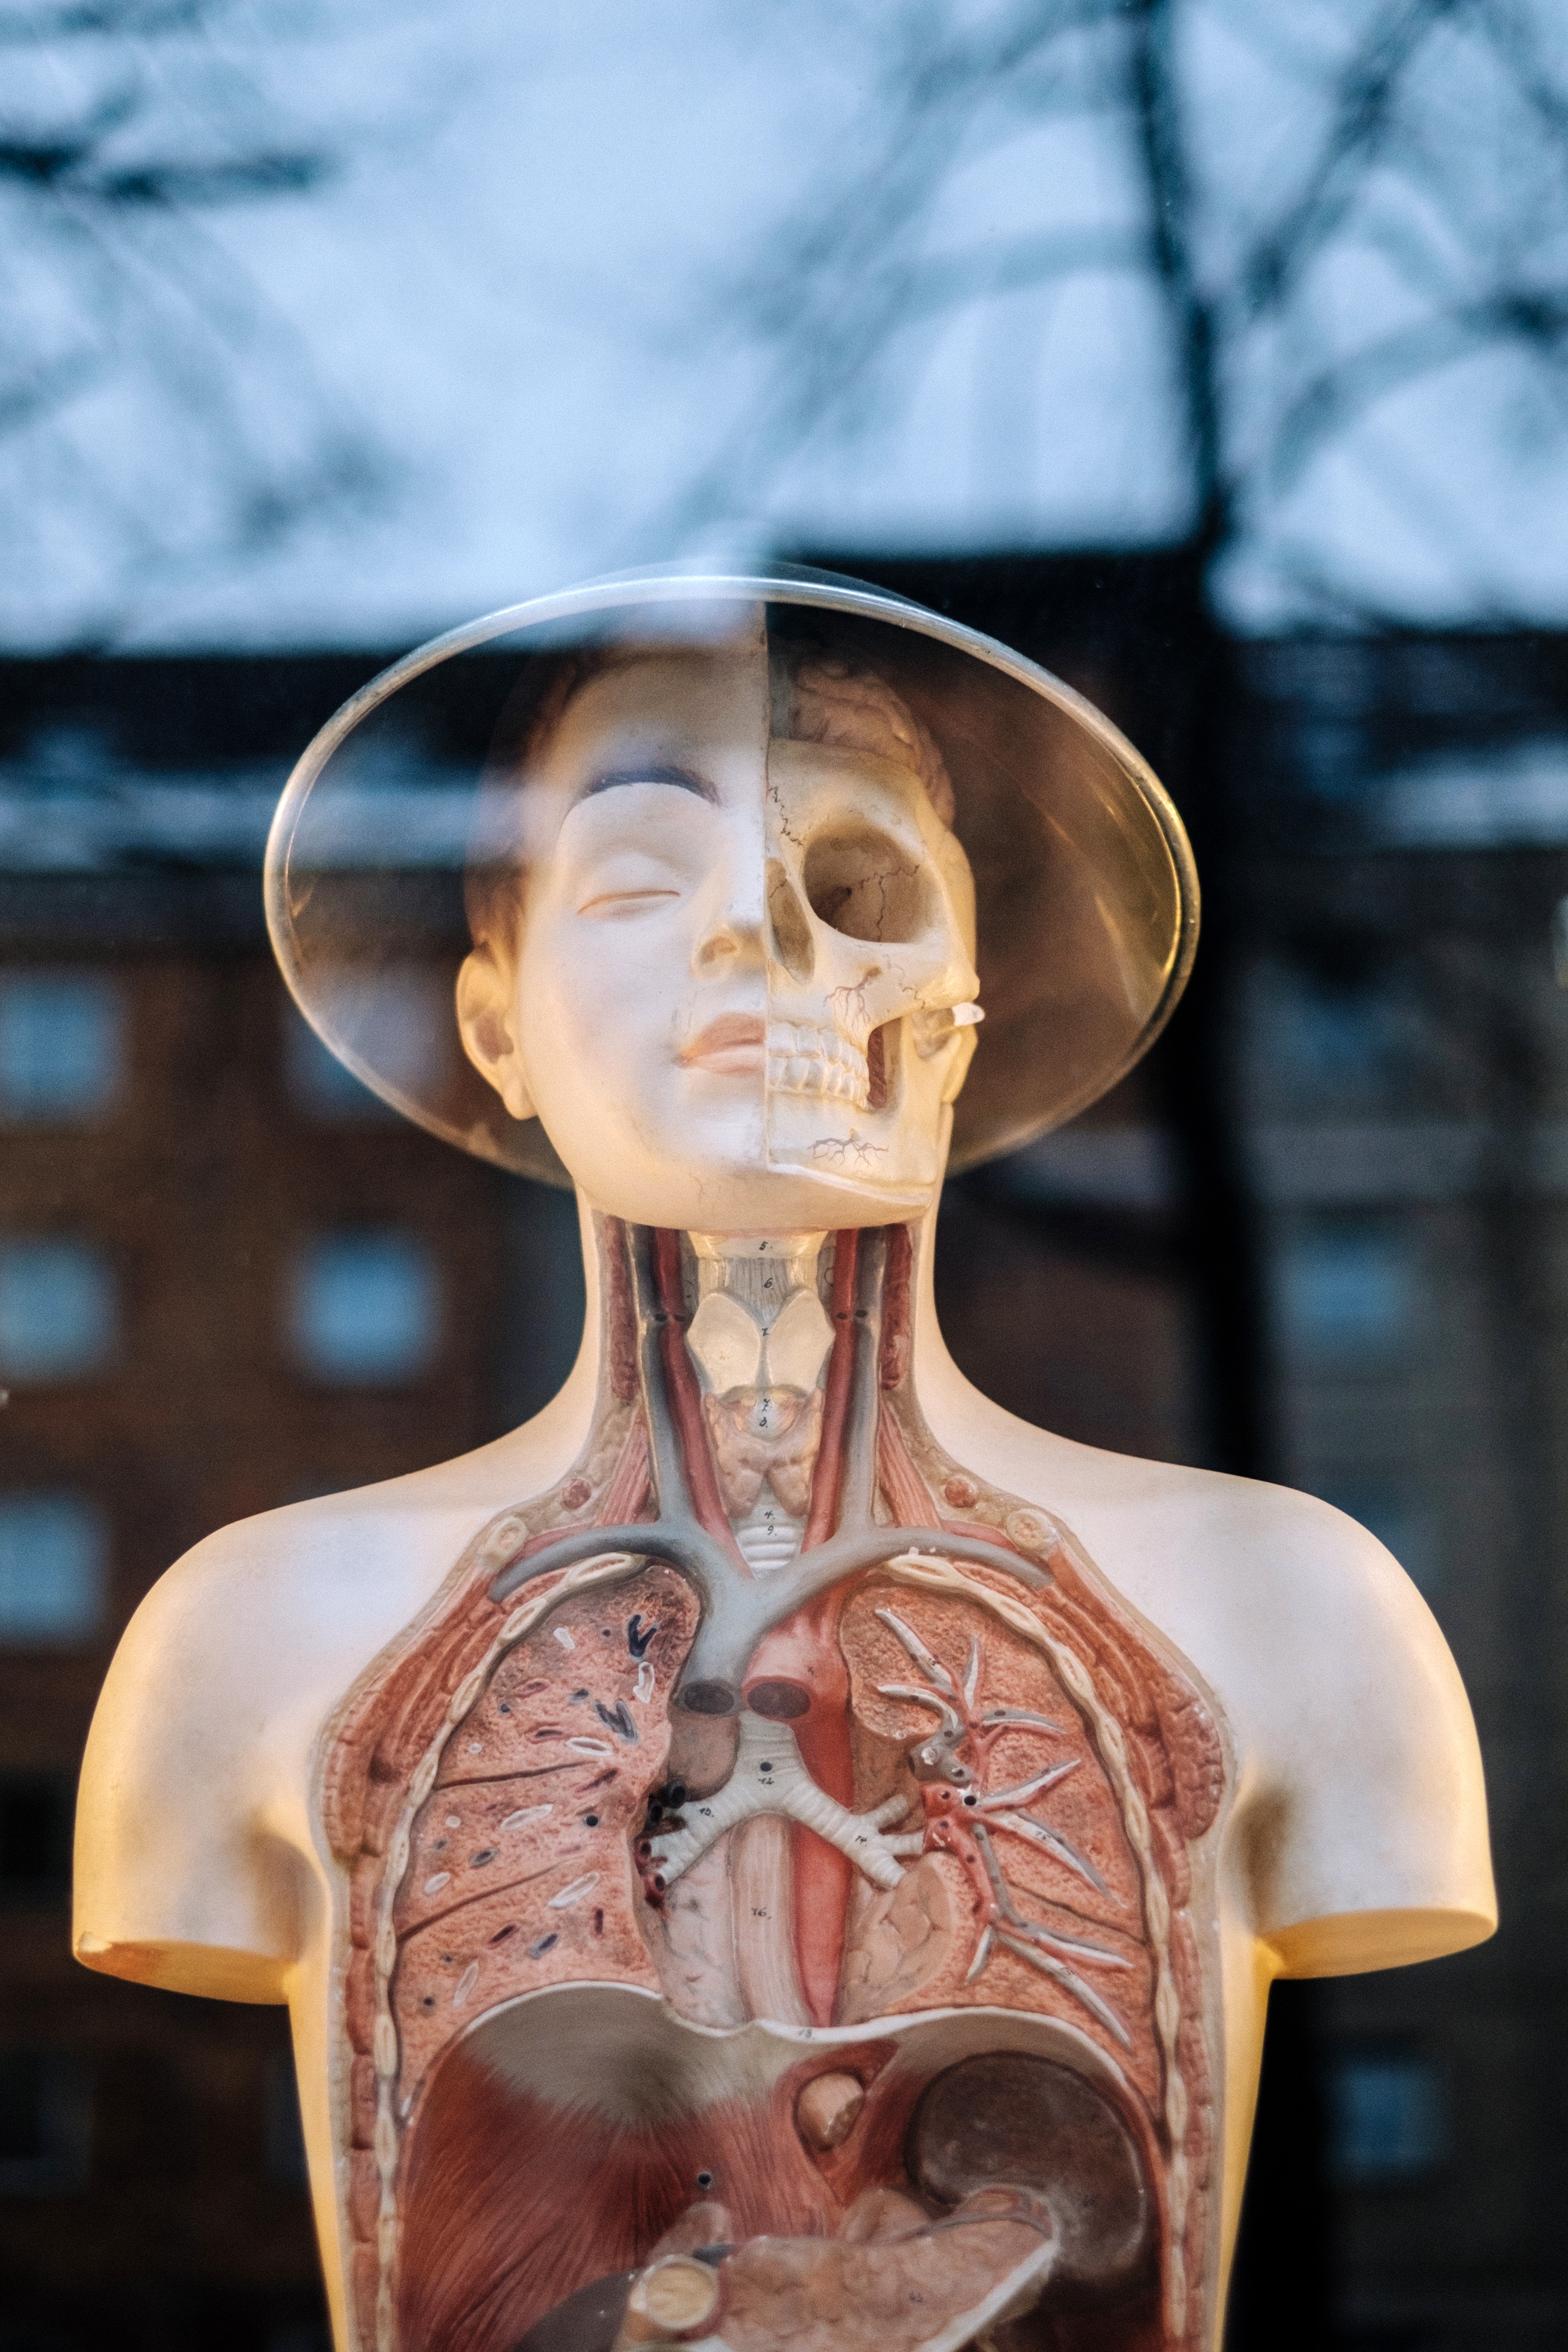 Menschliche Puppe mit sichtbaren inneren Organen.